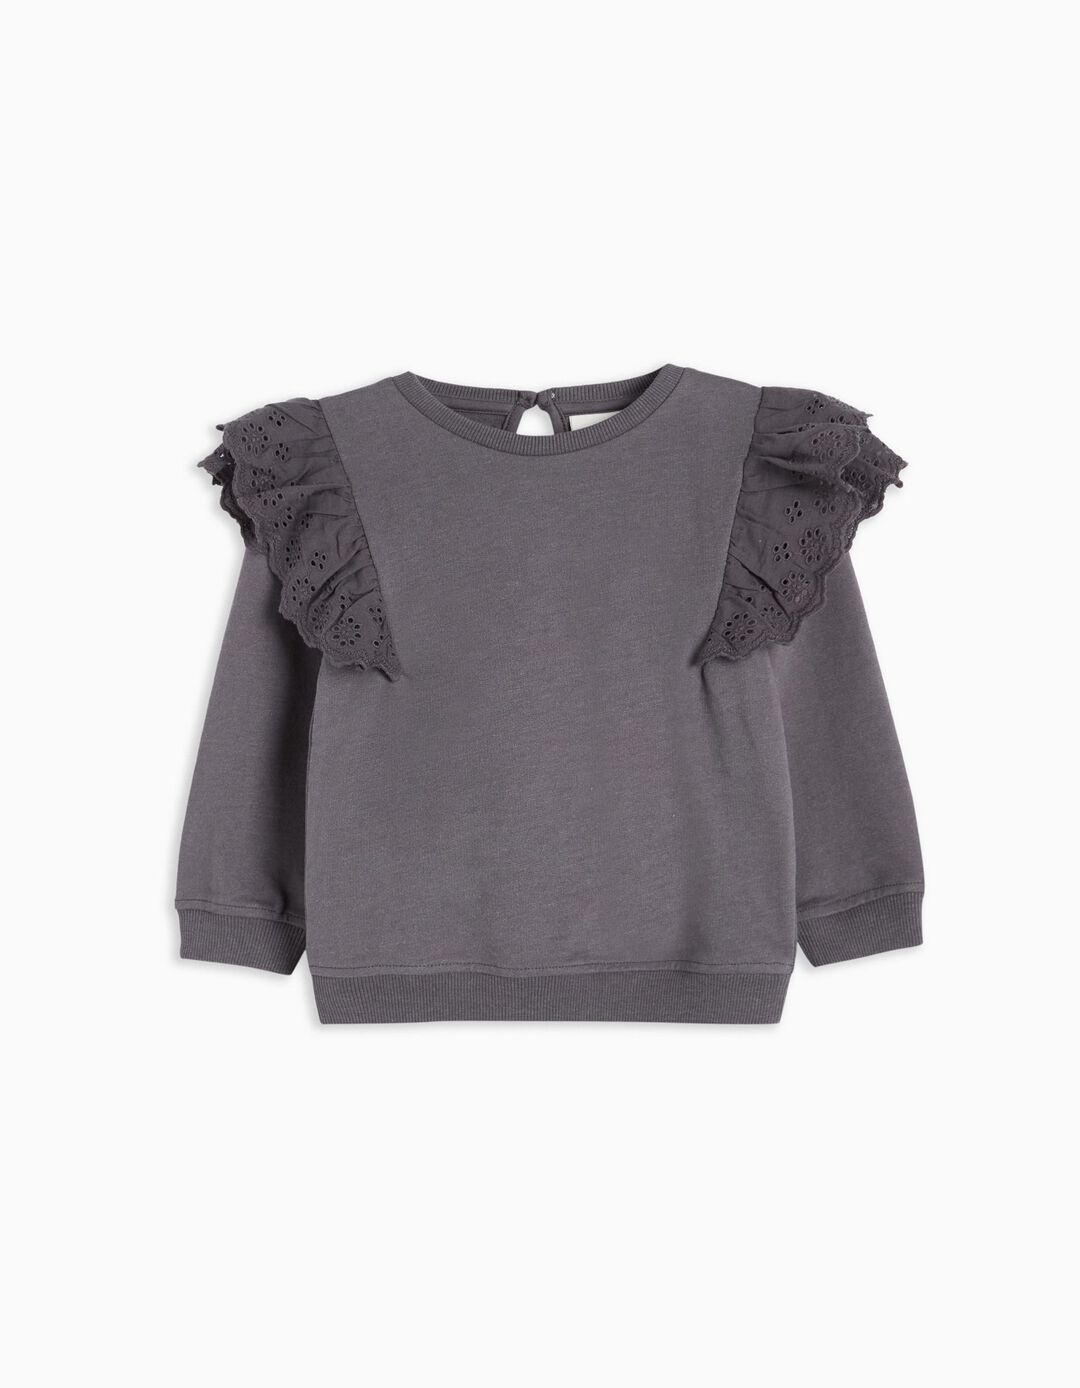 English Embroidery Sweatshirt, Baby Girls, Grey